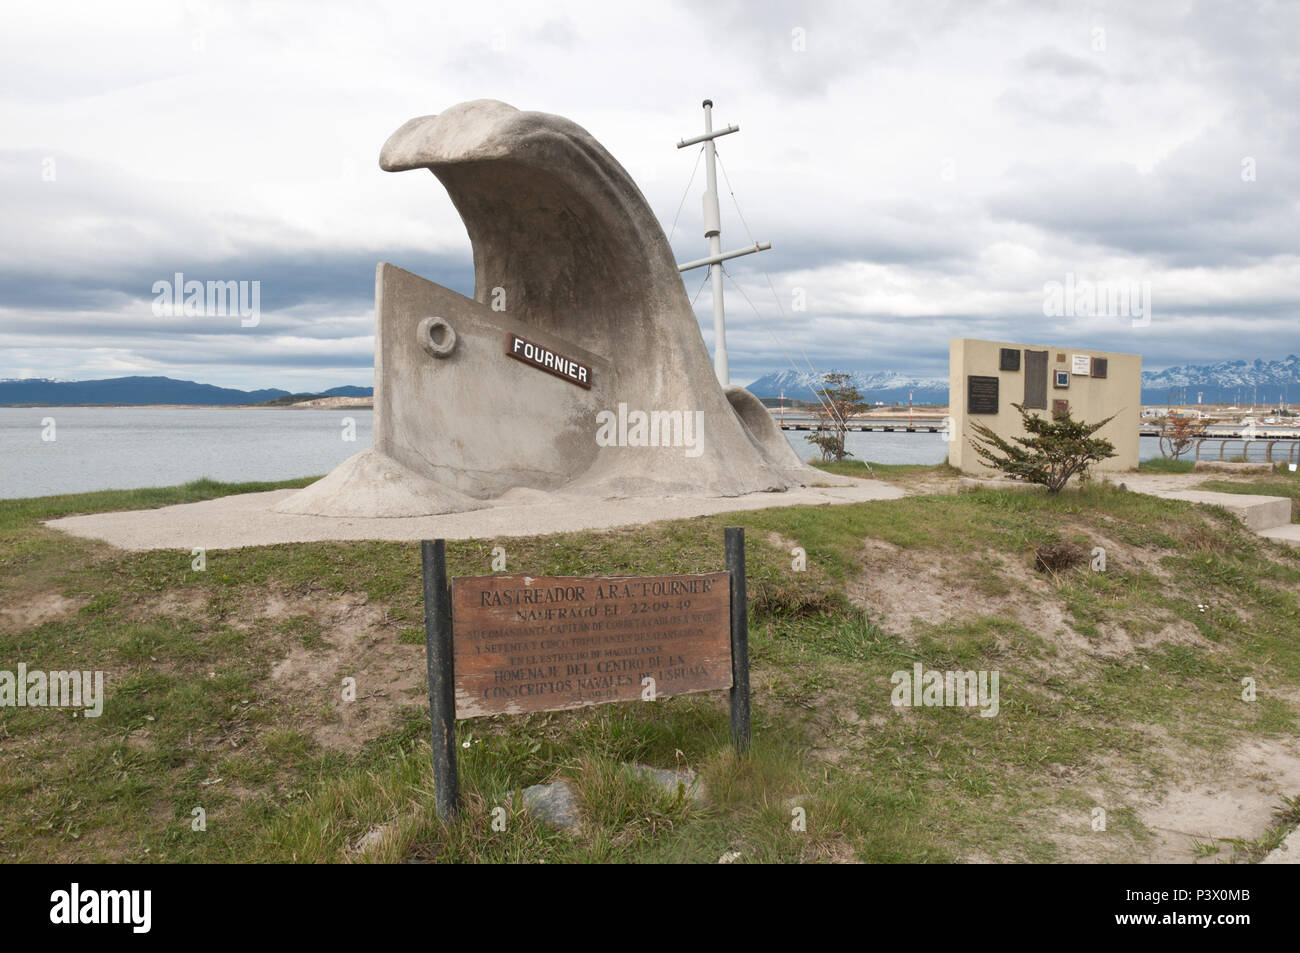 Monumento em memória ao naufrágio do Navio A.R.A Fournier, na cidade de Ushuaia, Argentina. O navio naufragou em 1949 com 77 pessoas a bordo. Foto Stock